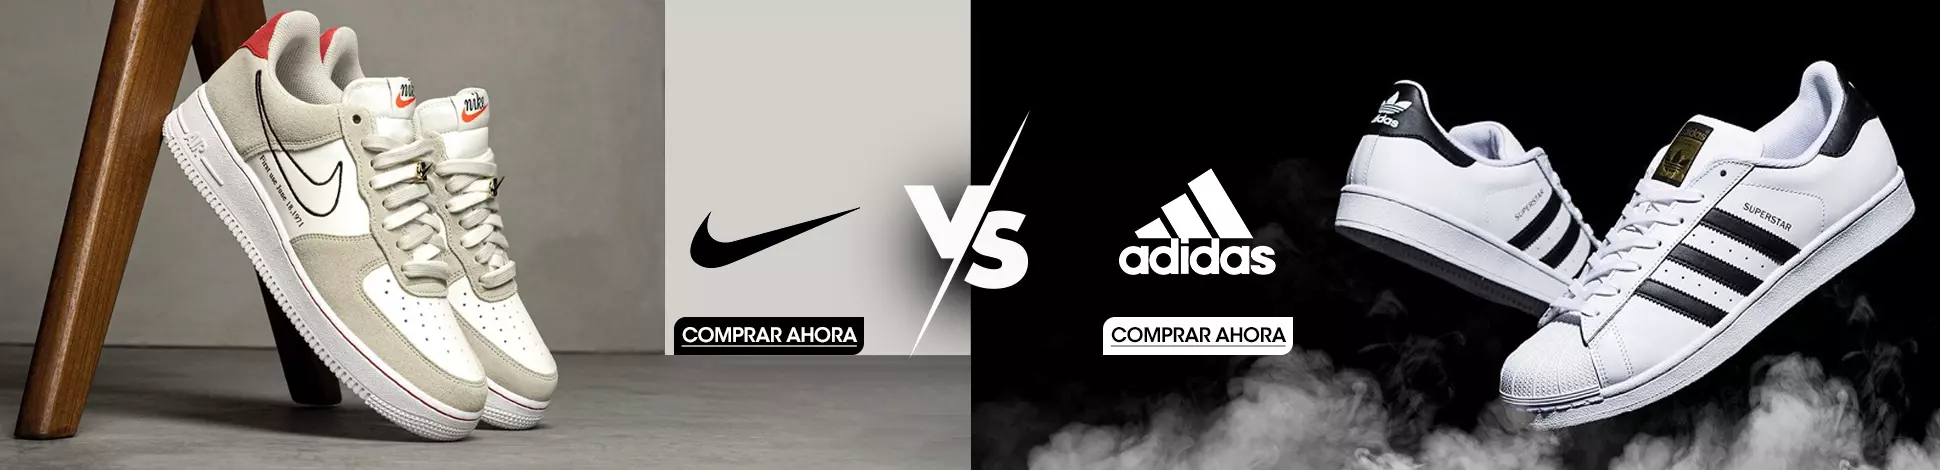 hs-adidas-nike-vs.webp | Juntoz.com